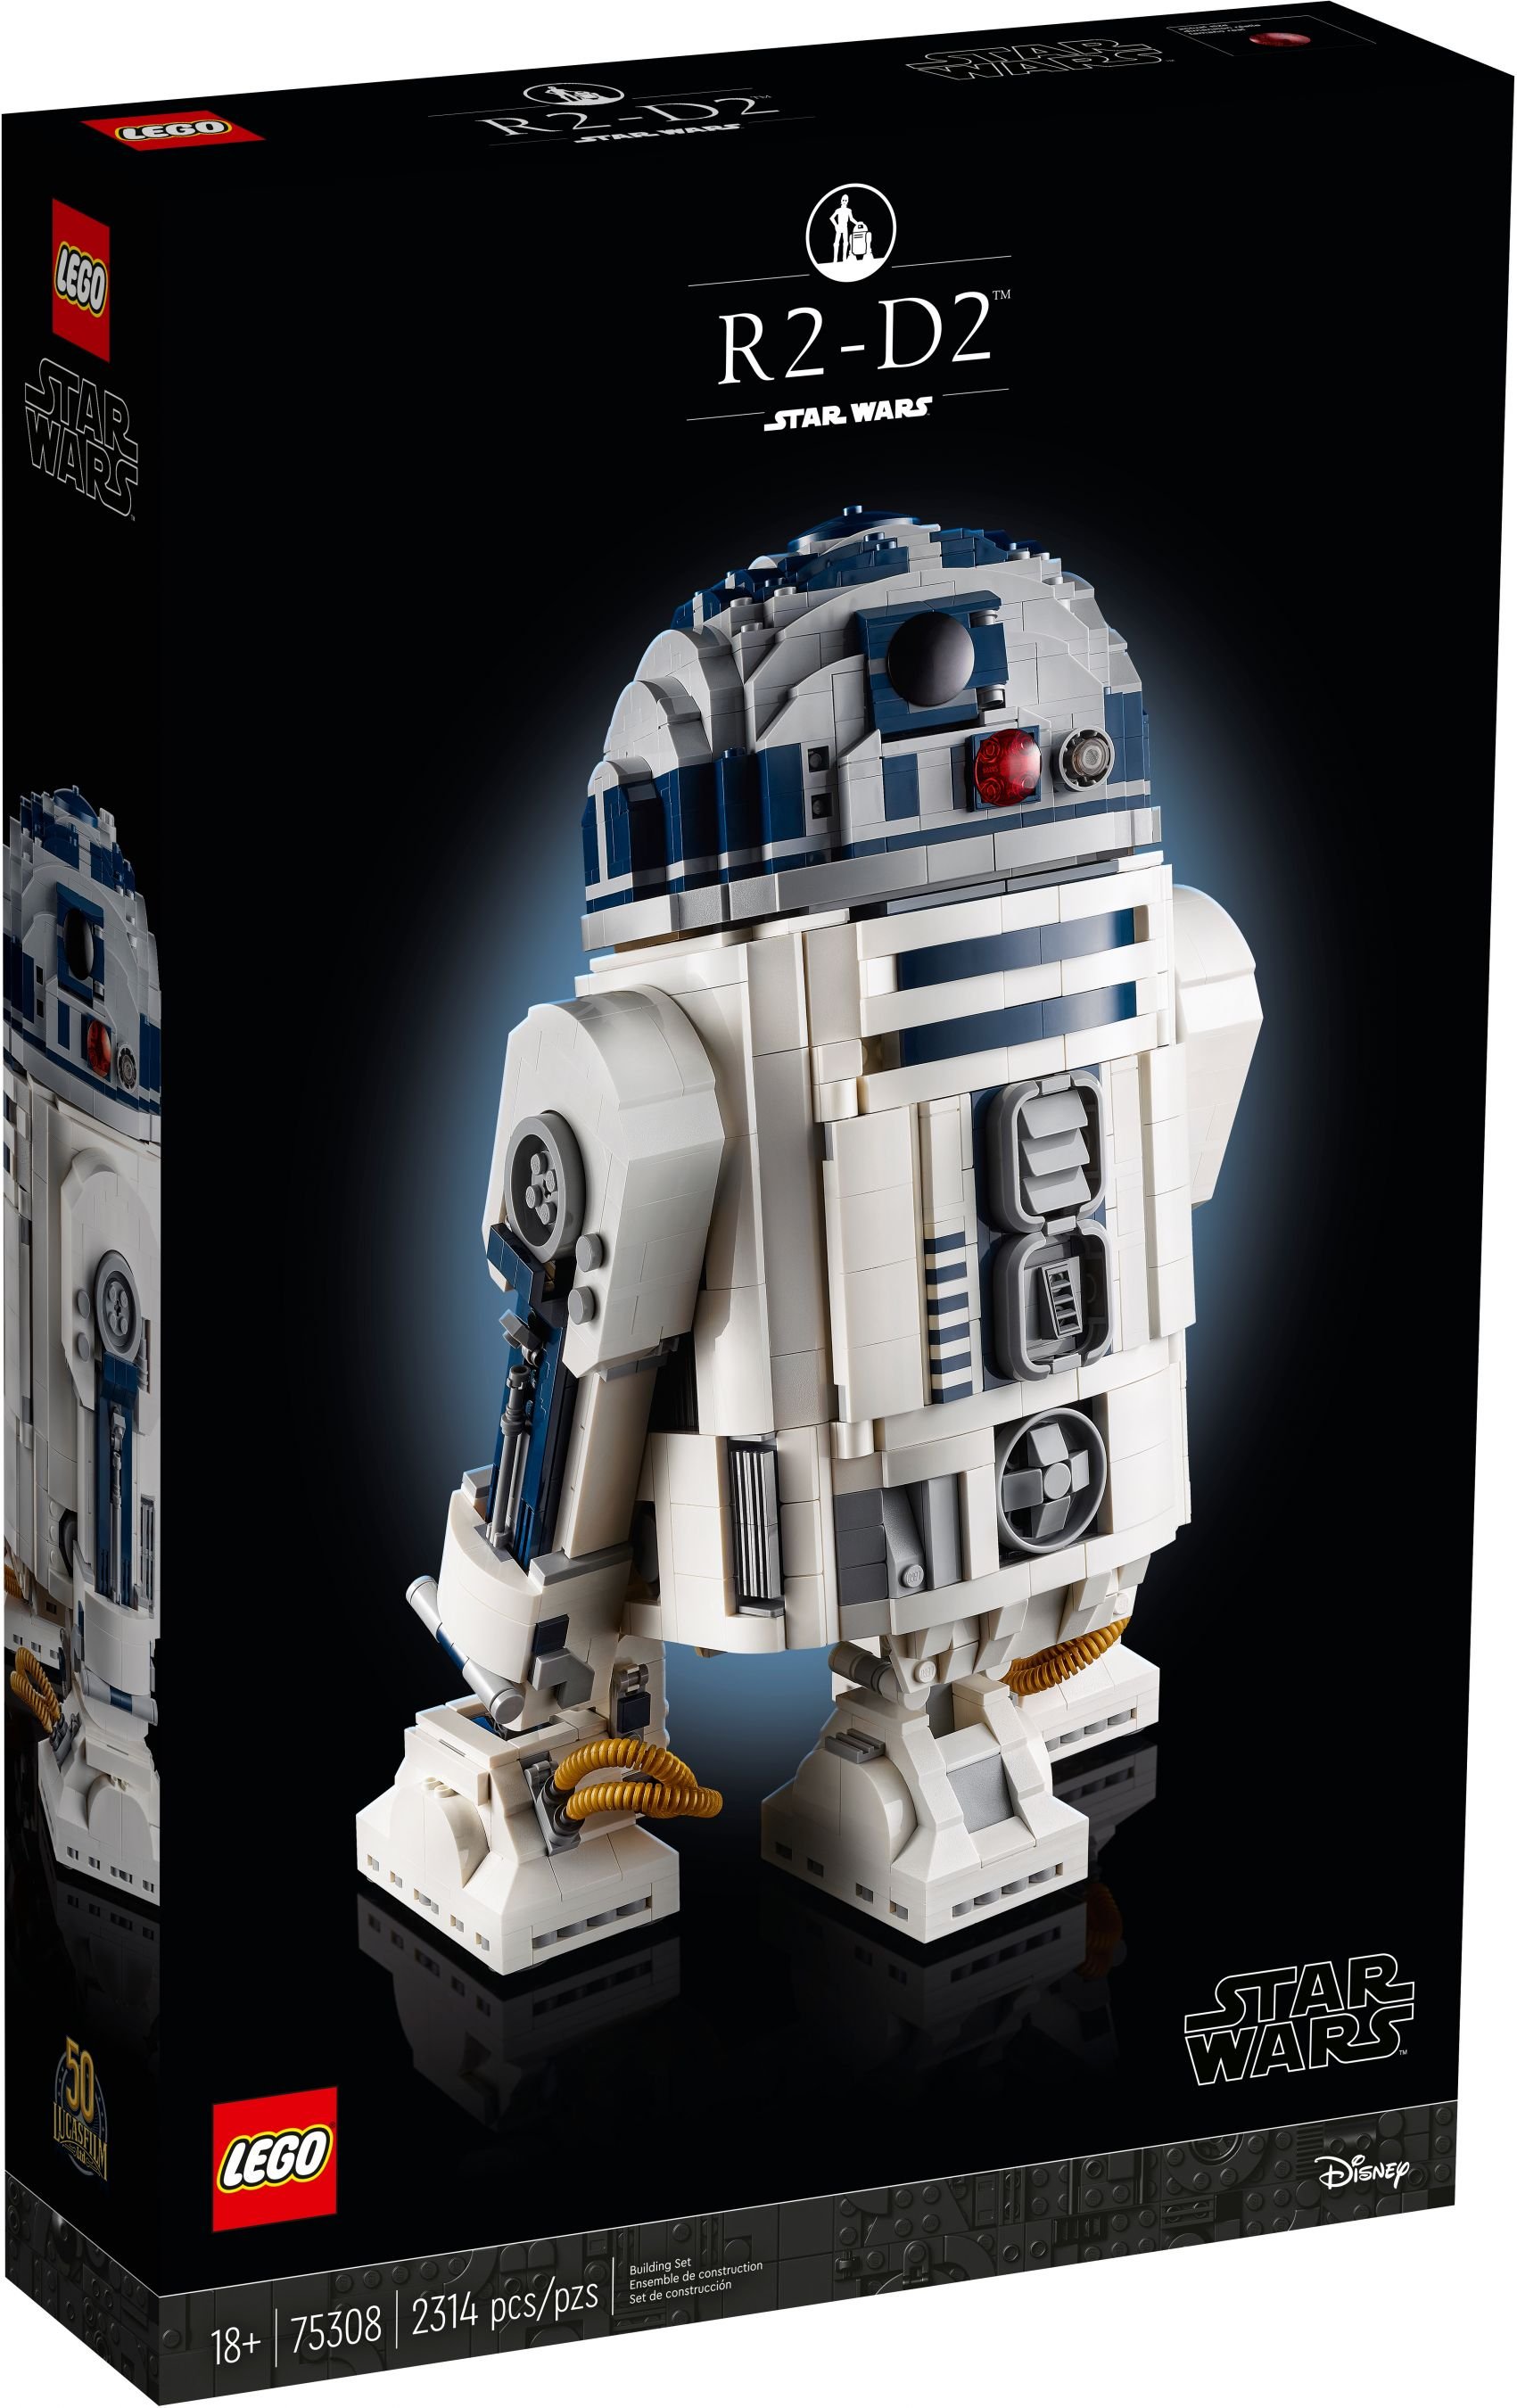 LEGO Star Wars 75308 R2-D2™ LEGO_75308_alt1.jpg